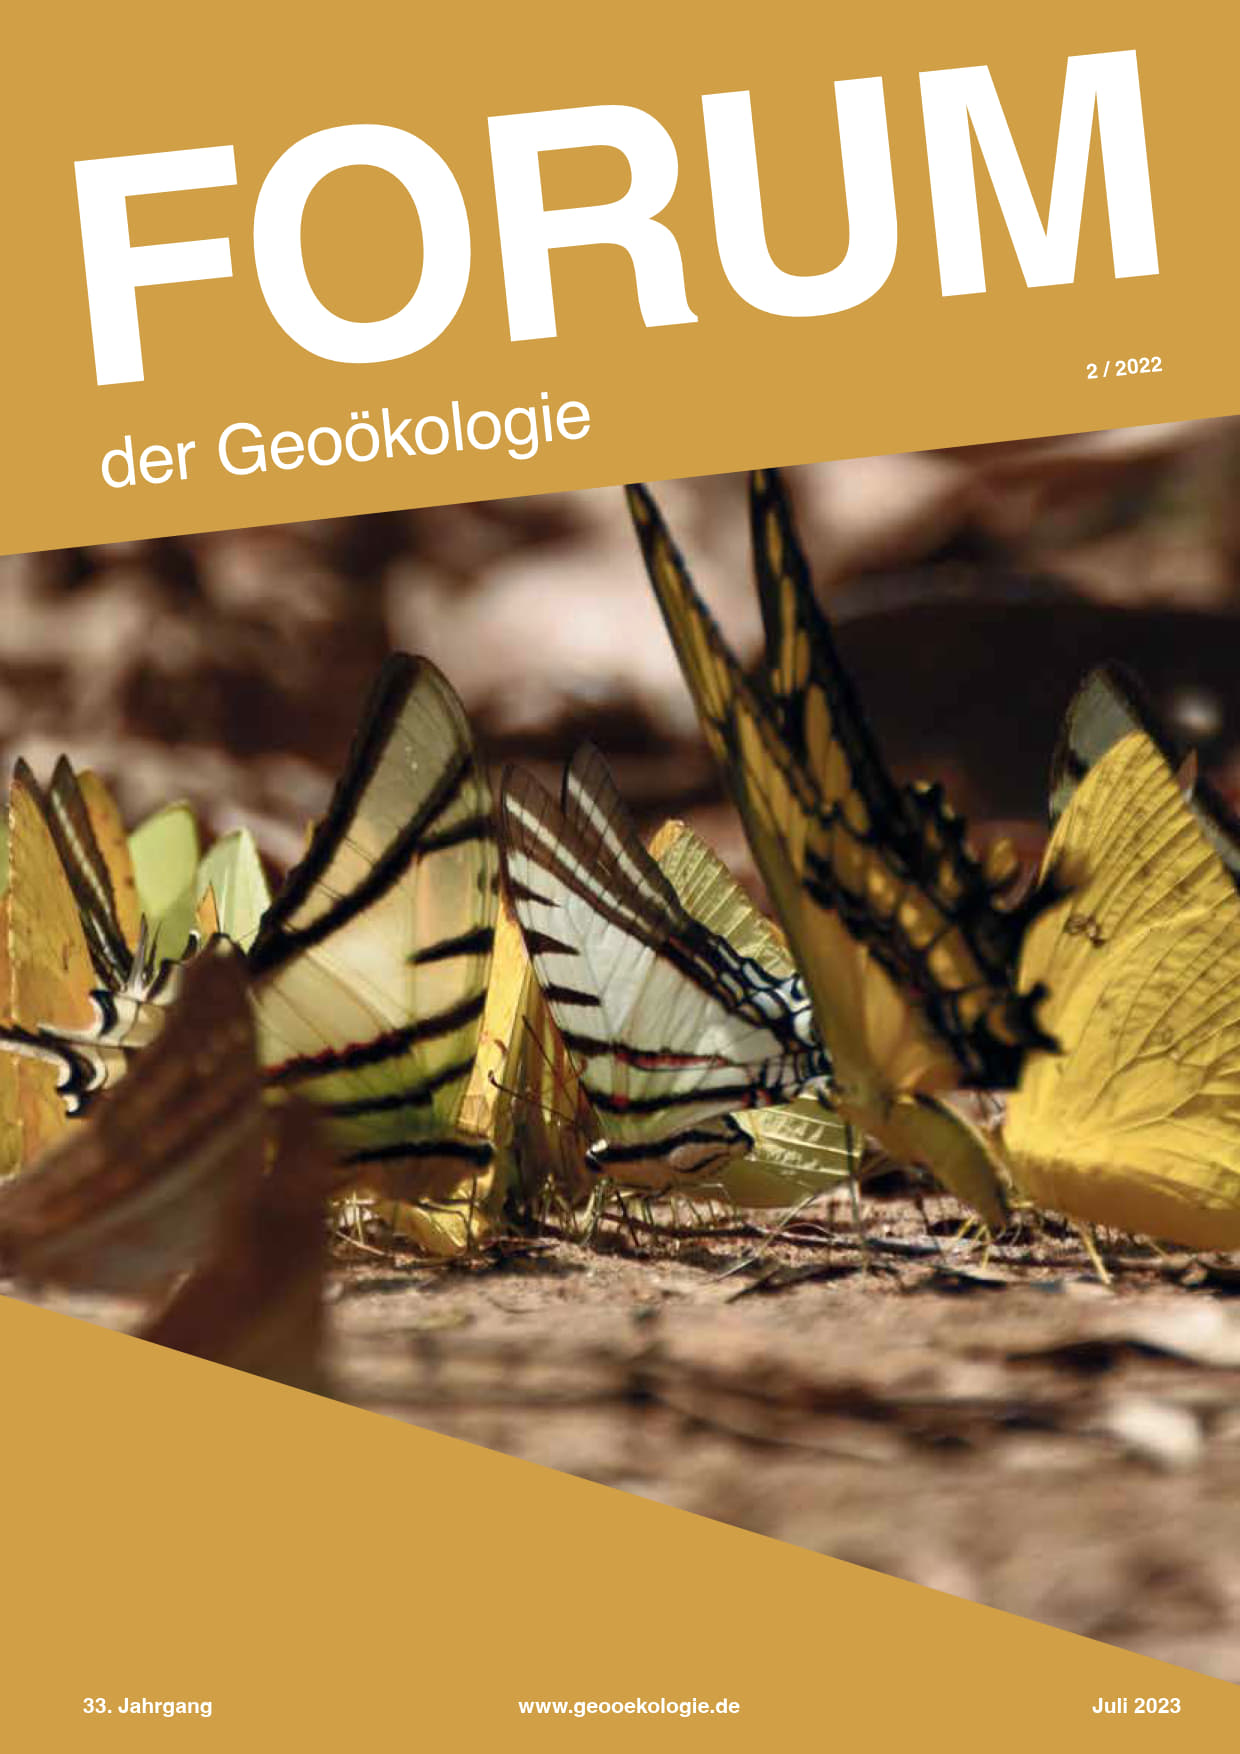 Deckblatt Forum der Geoökologie, Ausgabe 22/2